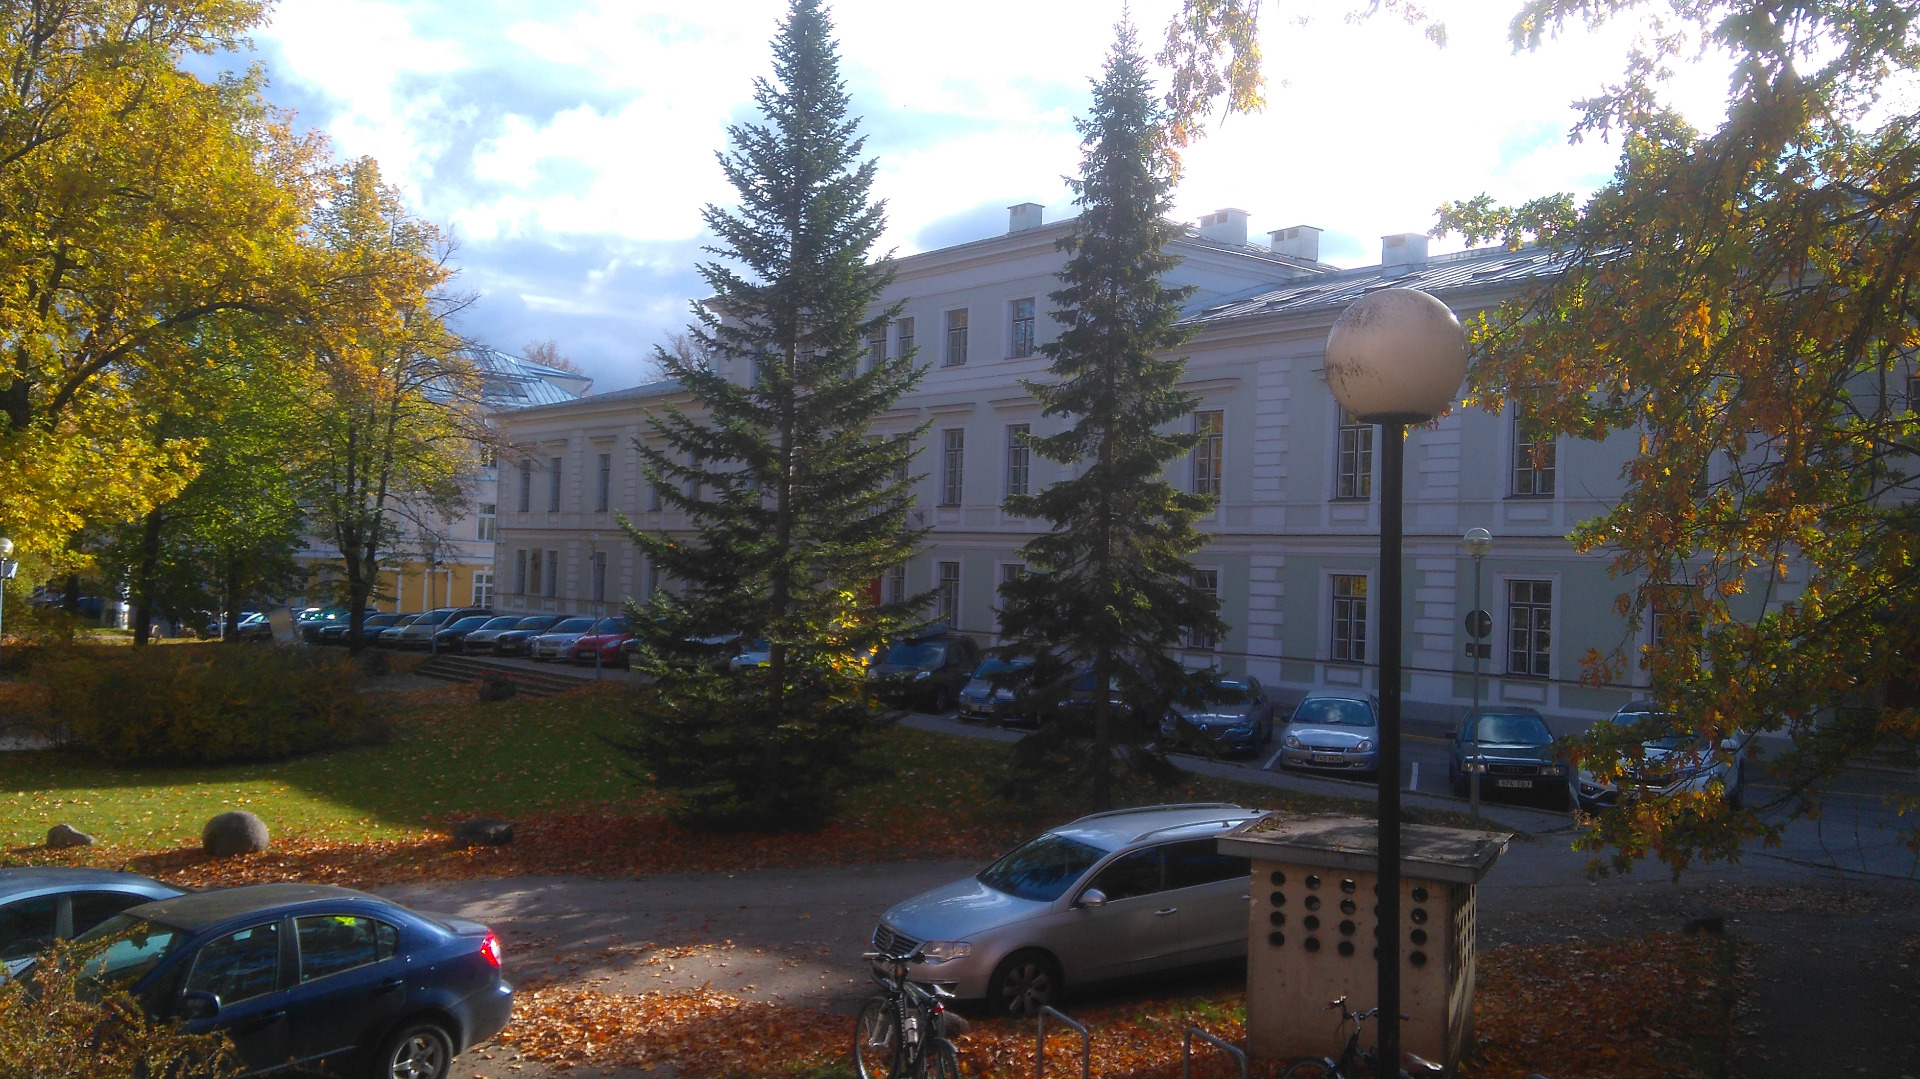 Tartu University Clinic in Toomemäe rephoto